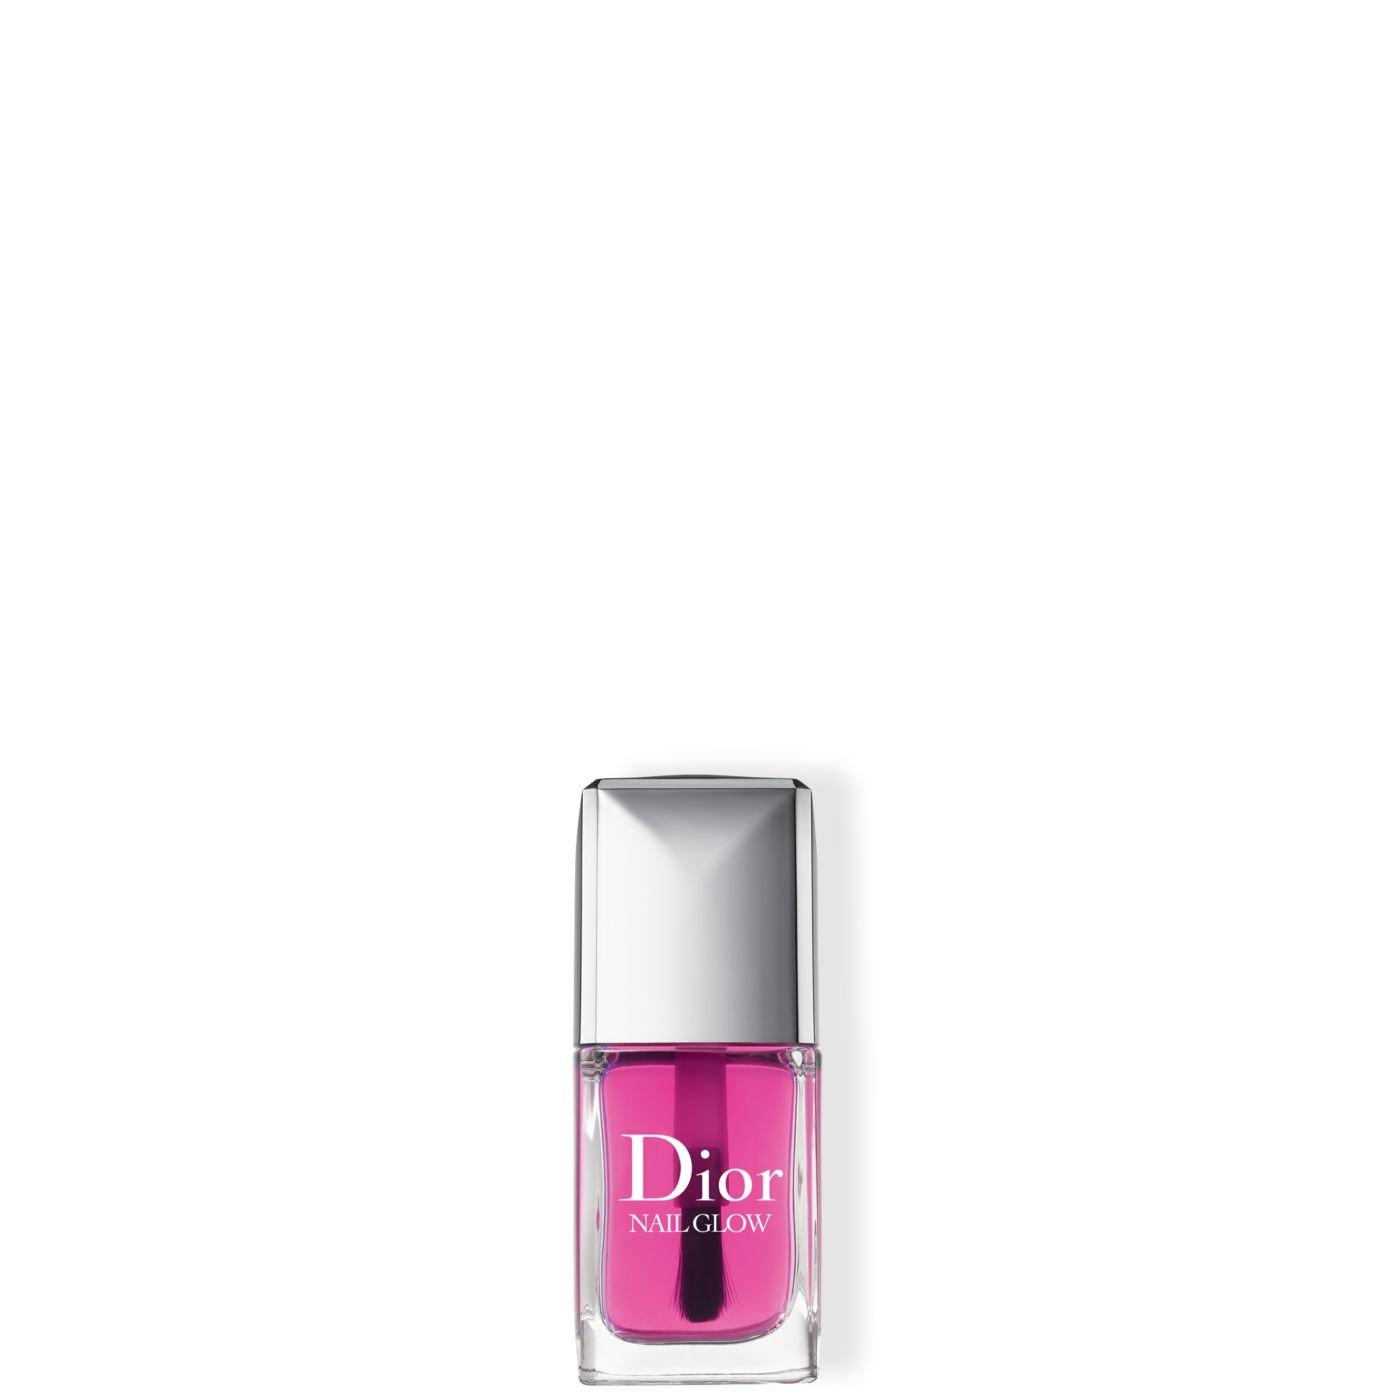 Image of Dior Nail Glow - 10ml